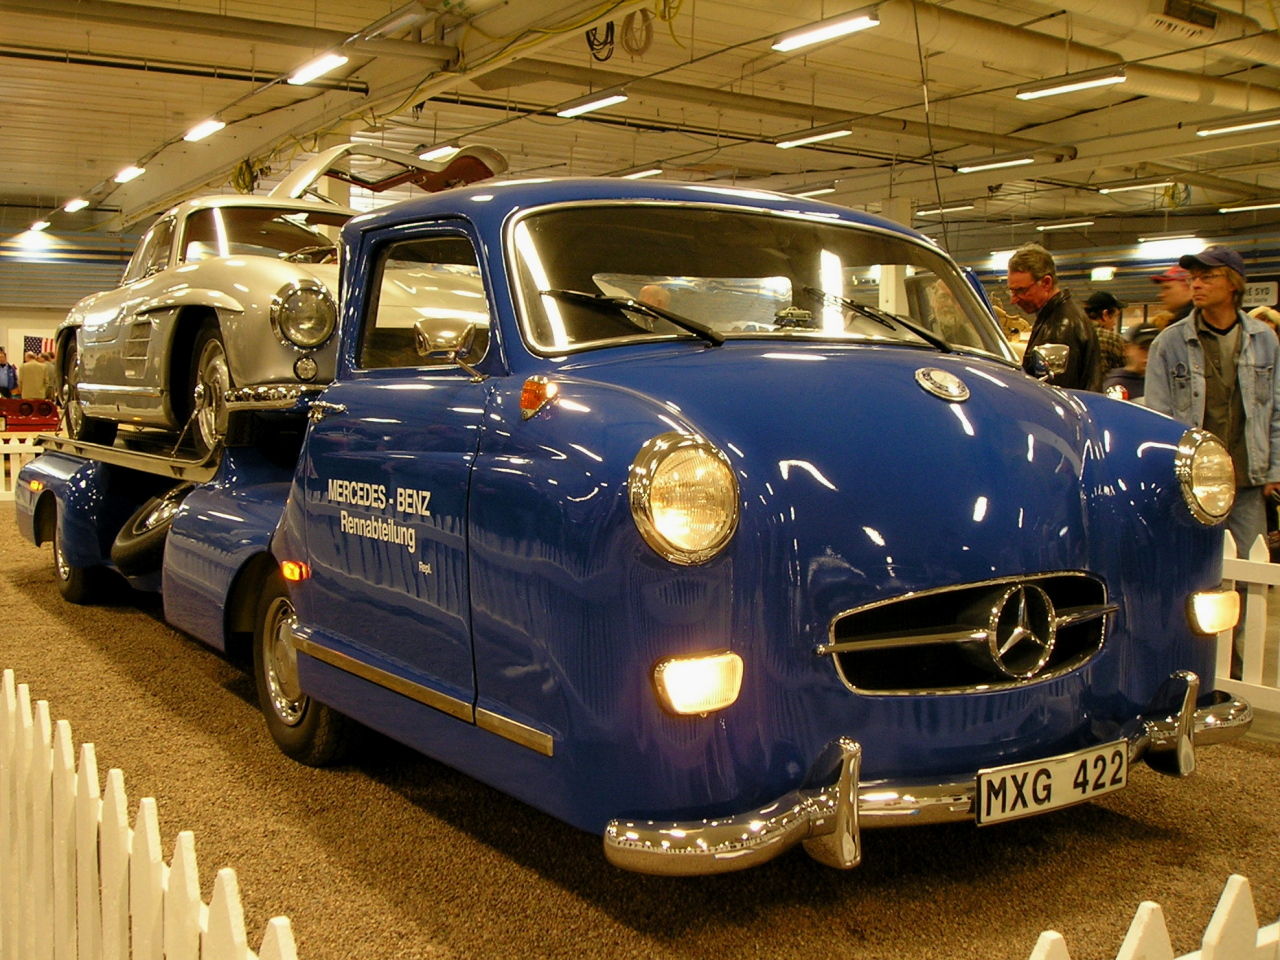 Mercedes-Benz Spezial 300 Transporter replica